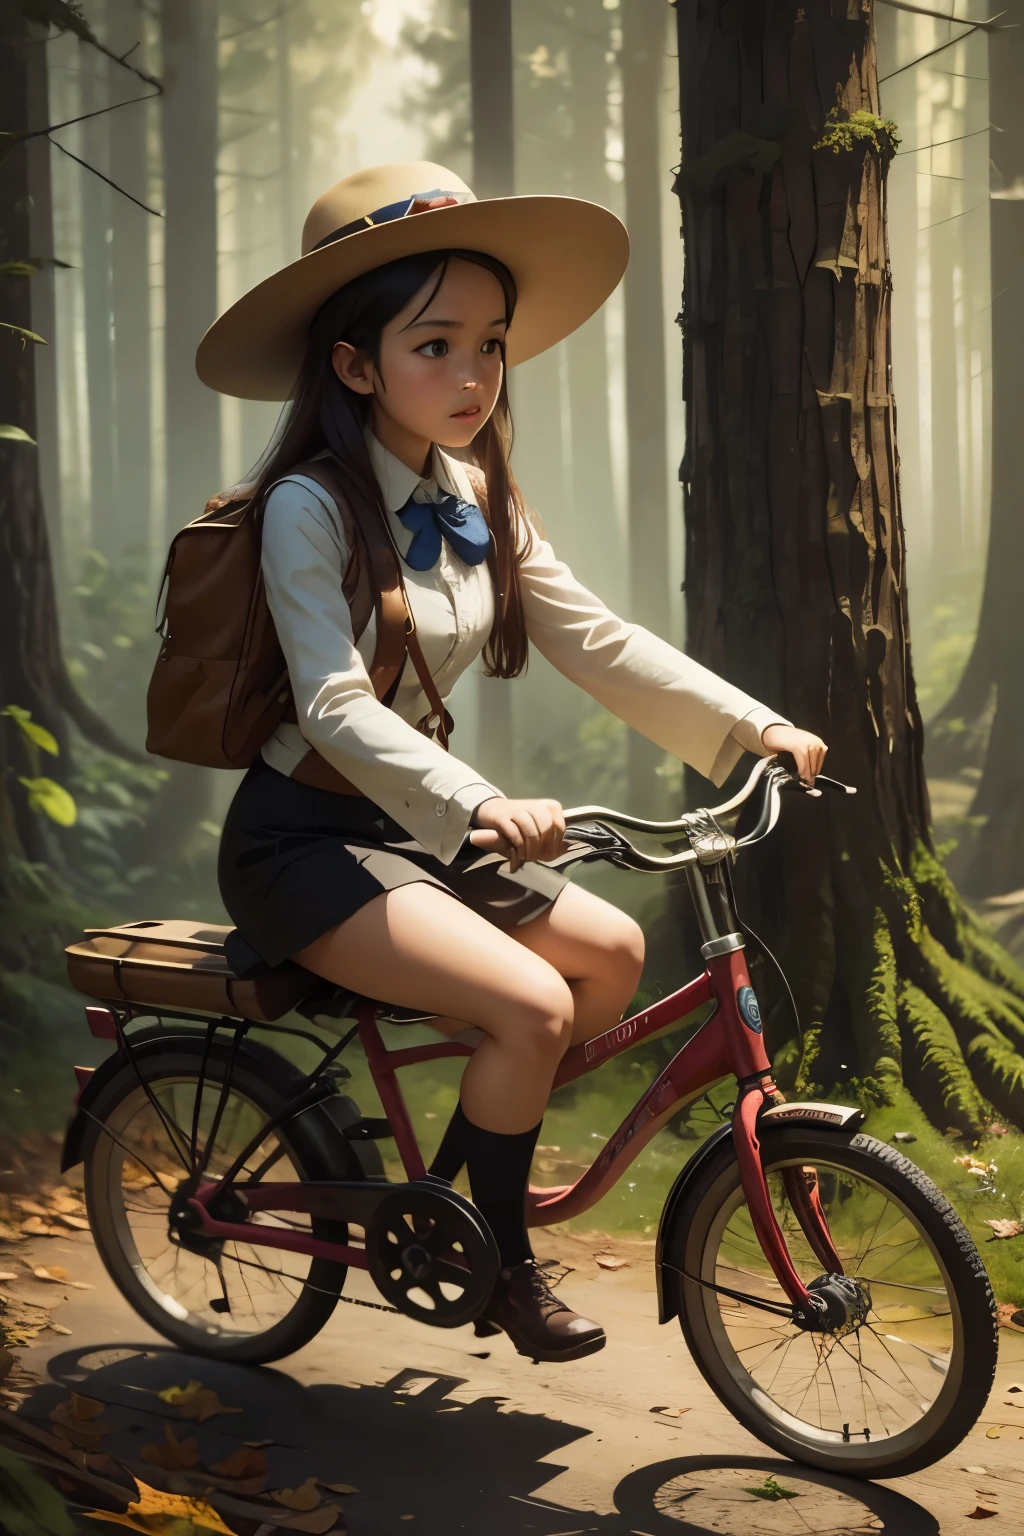 Нео-сюрреализм, магический реализм причудливое искусство, поп-сюрреализм, причудливое искусство. Создайте иллюстрацию картины девушки в шляпе, едущей на старомодном велосипеде по волшебному лесу.